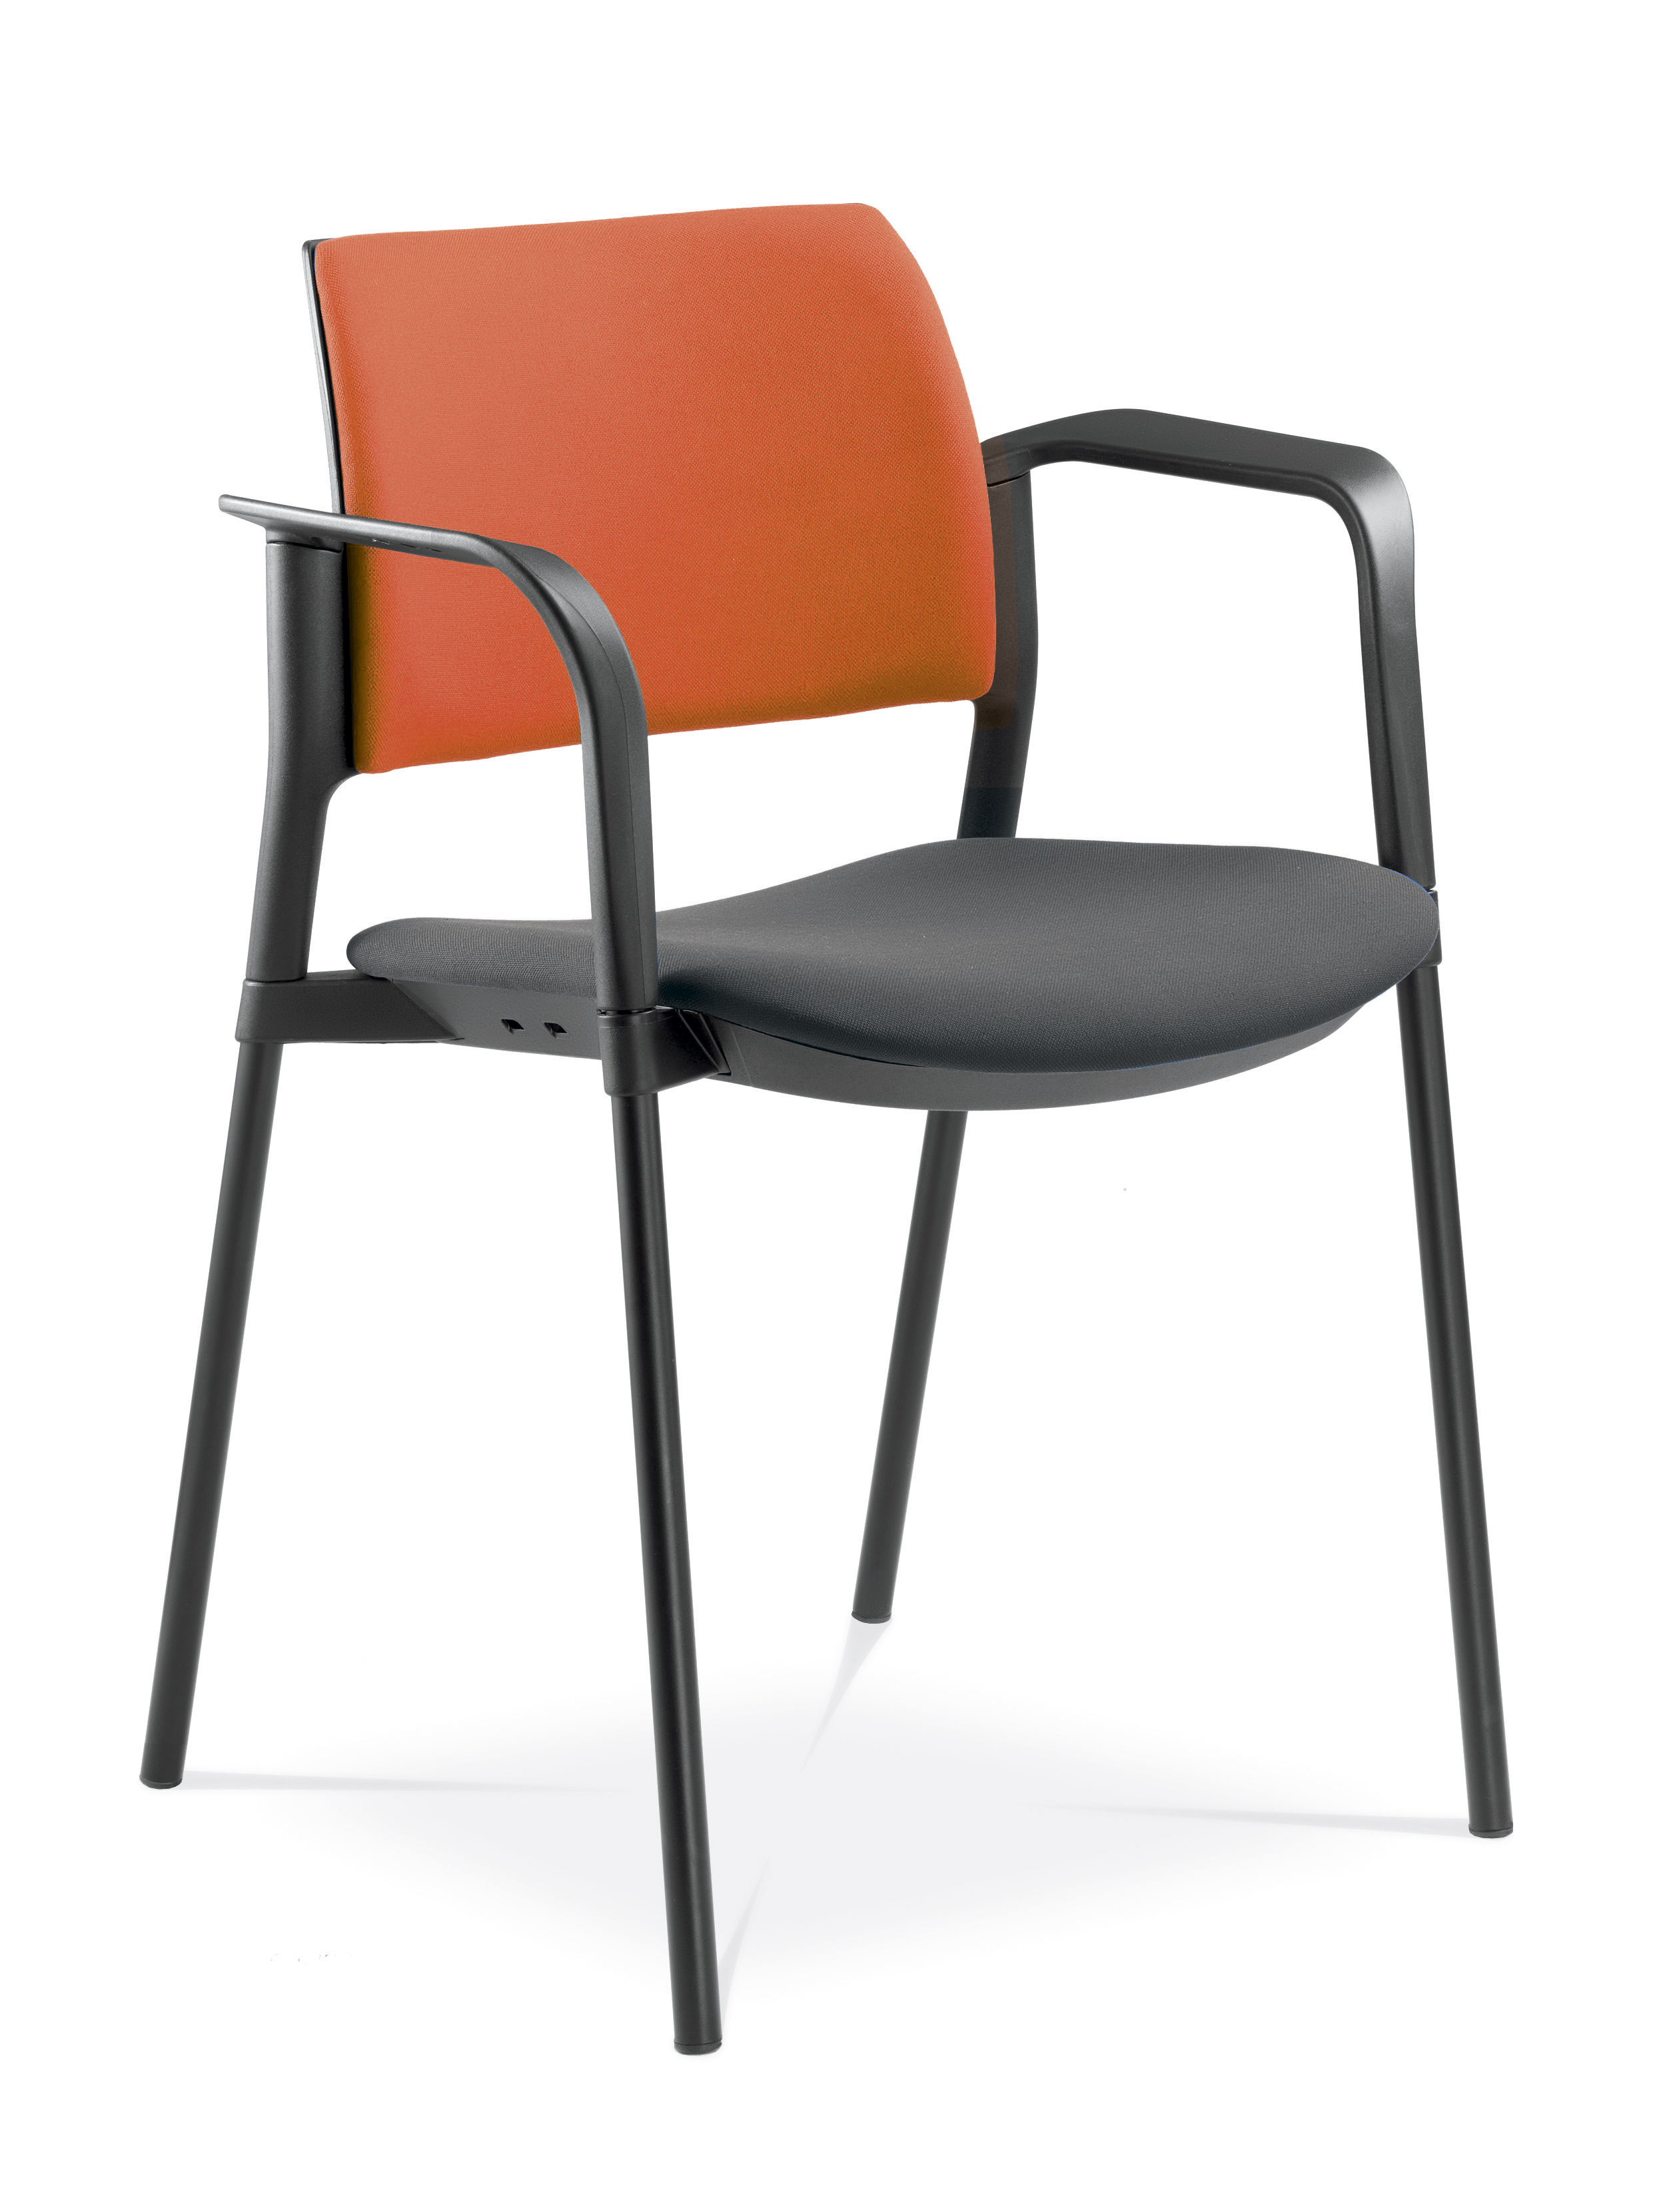 Dream+ Konferenzstuhl mit/ohne Armlehnen (Sitz & Rücken gepolstert, 4-Fuß-Gestell)